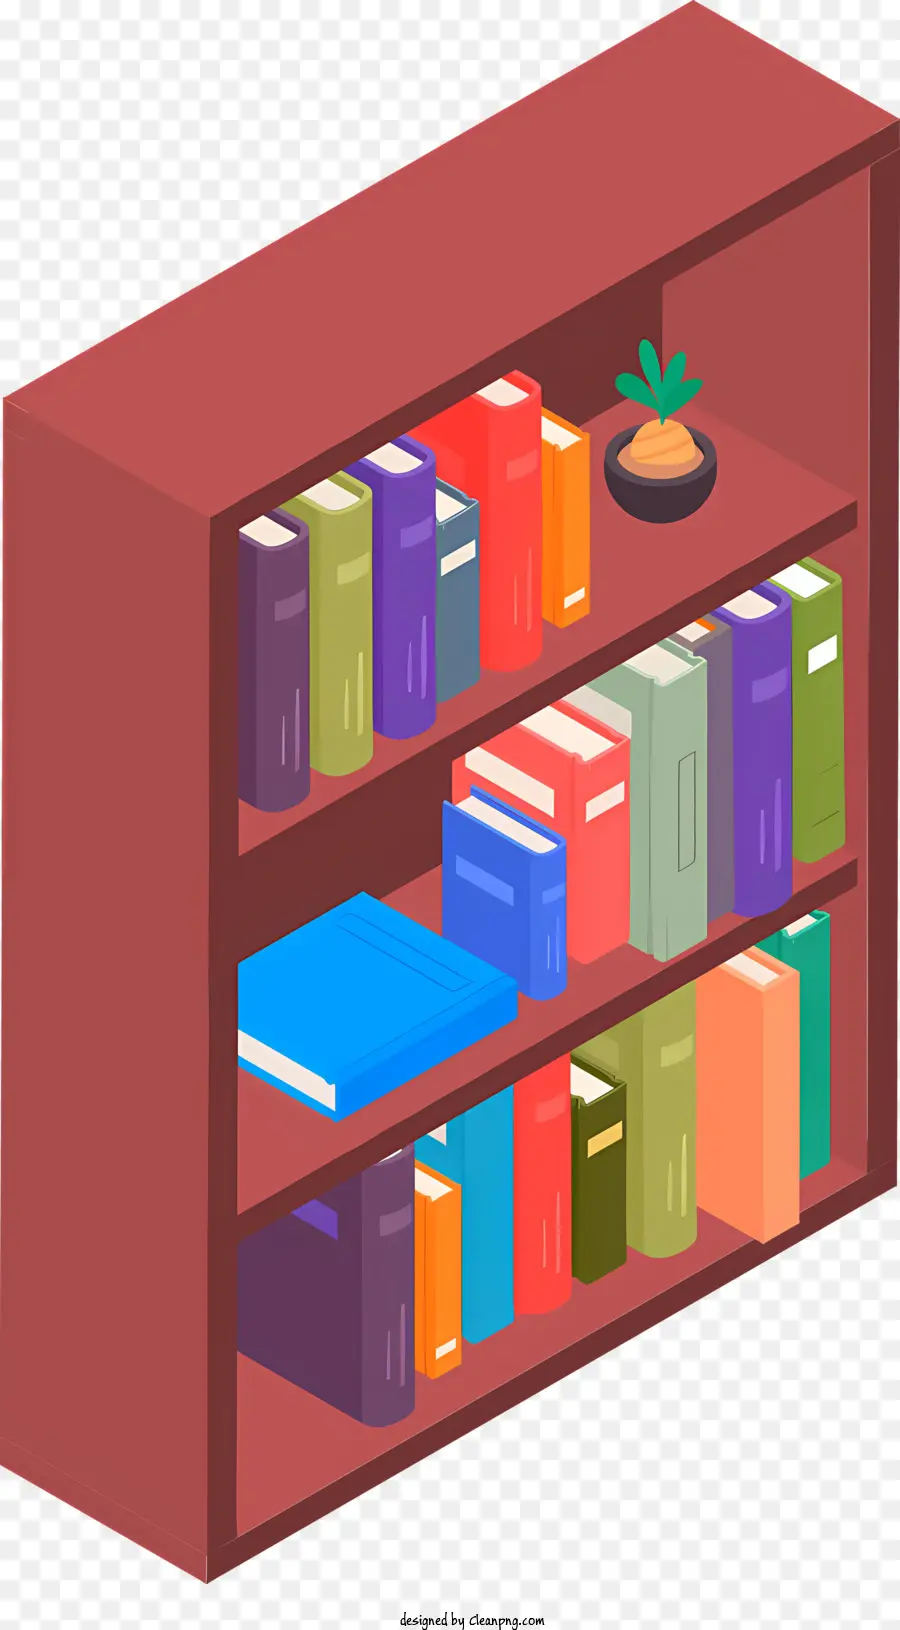 Biểu tượng sách thư viện sách thư viện - Kệ sách với những cuốn sách đầy màu sắc trong không gian lộn xộn